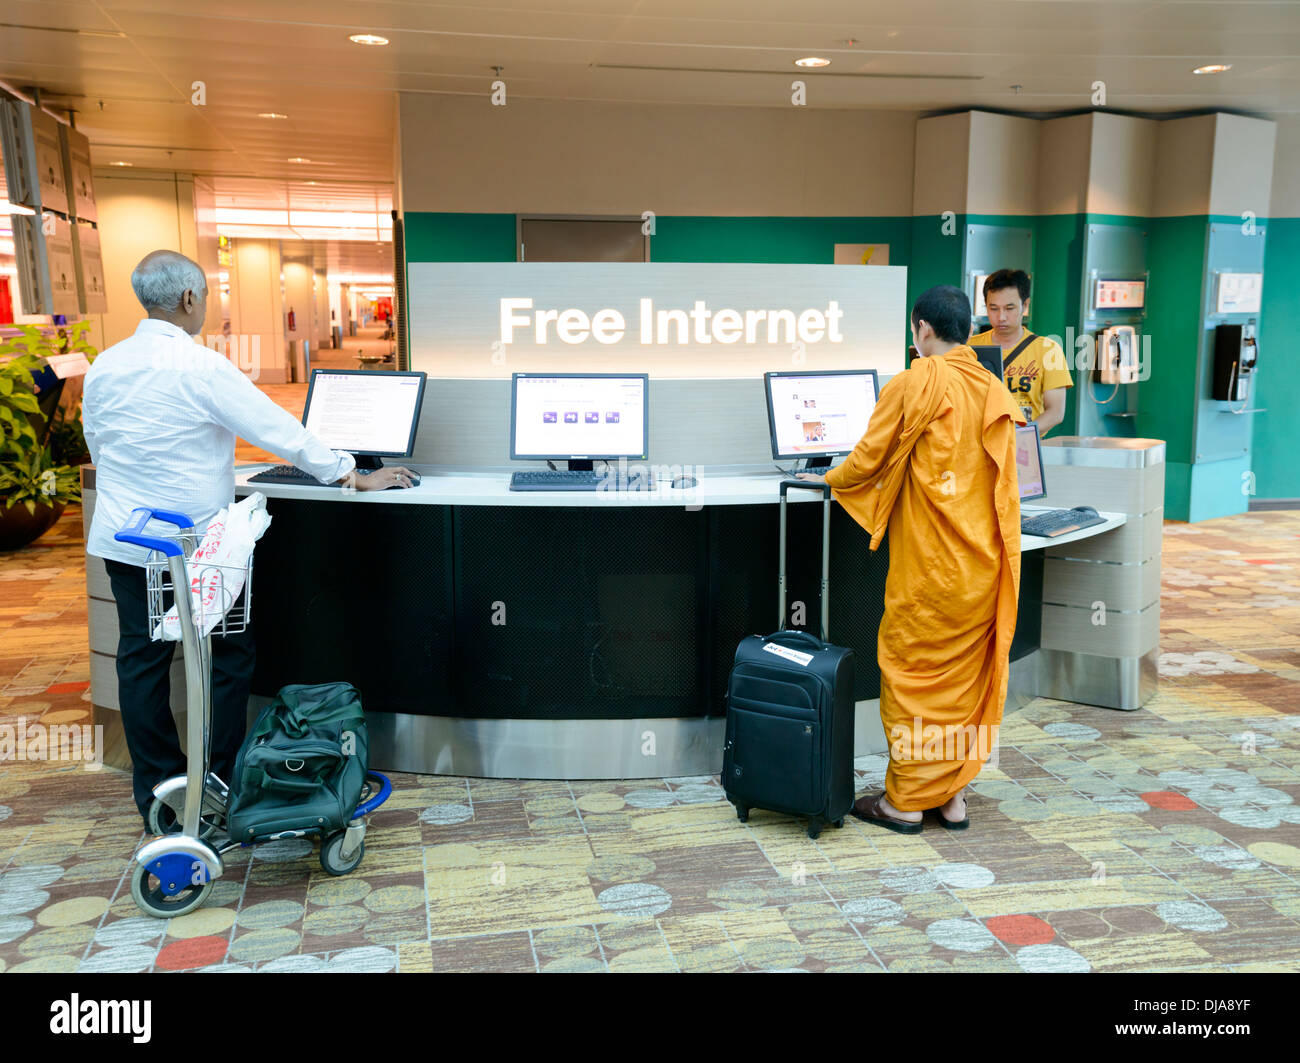 Moderne und traditionelle treffen sich in einem multikulturellen Umfeld: ein buddhistischer Mönch und indischer Geschäftsmann verwenden einen kostenlosen Internetzugang. Stockfoto